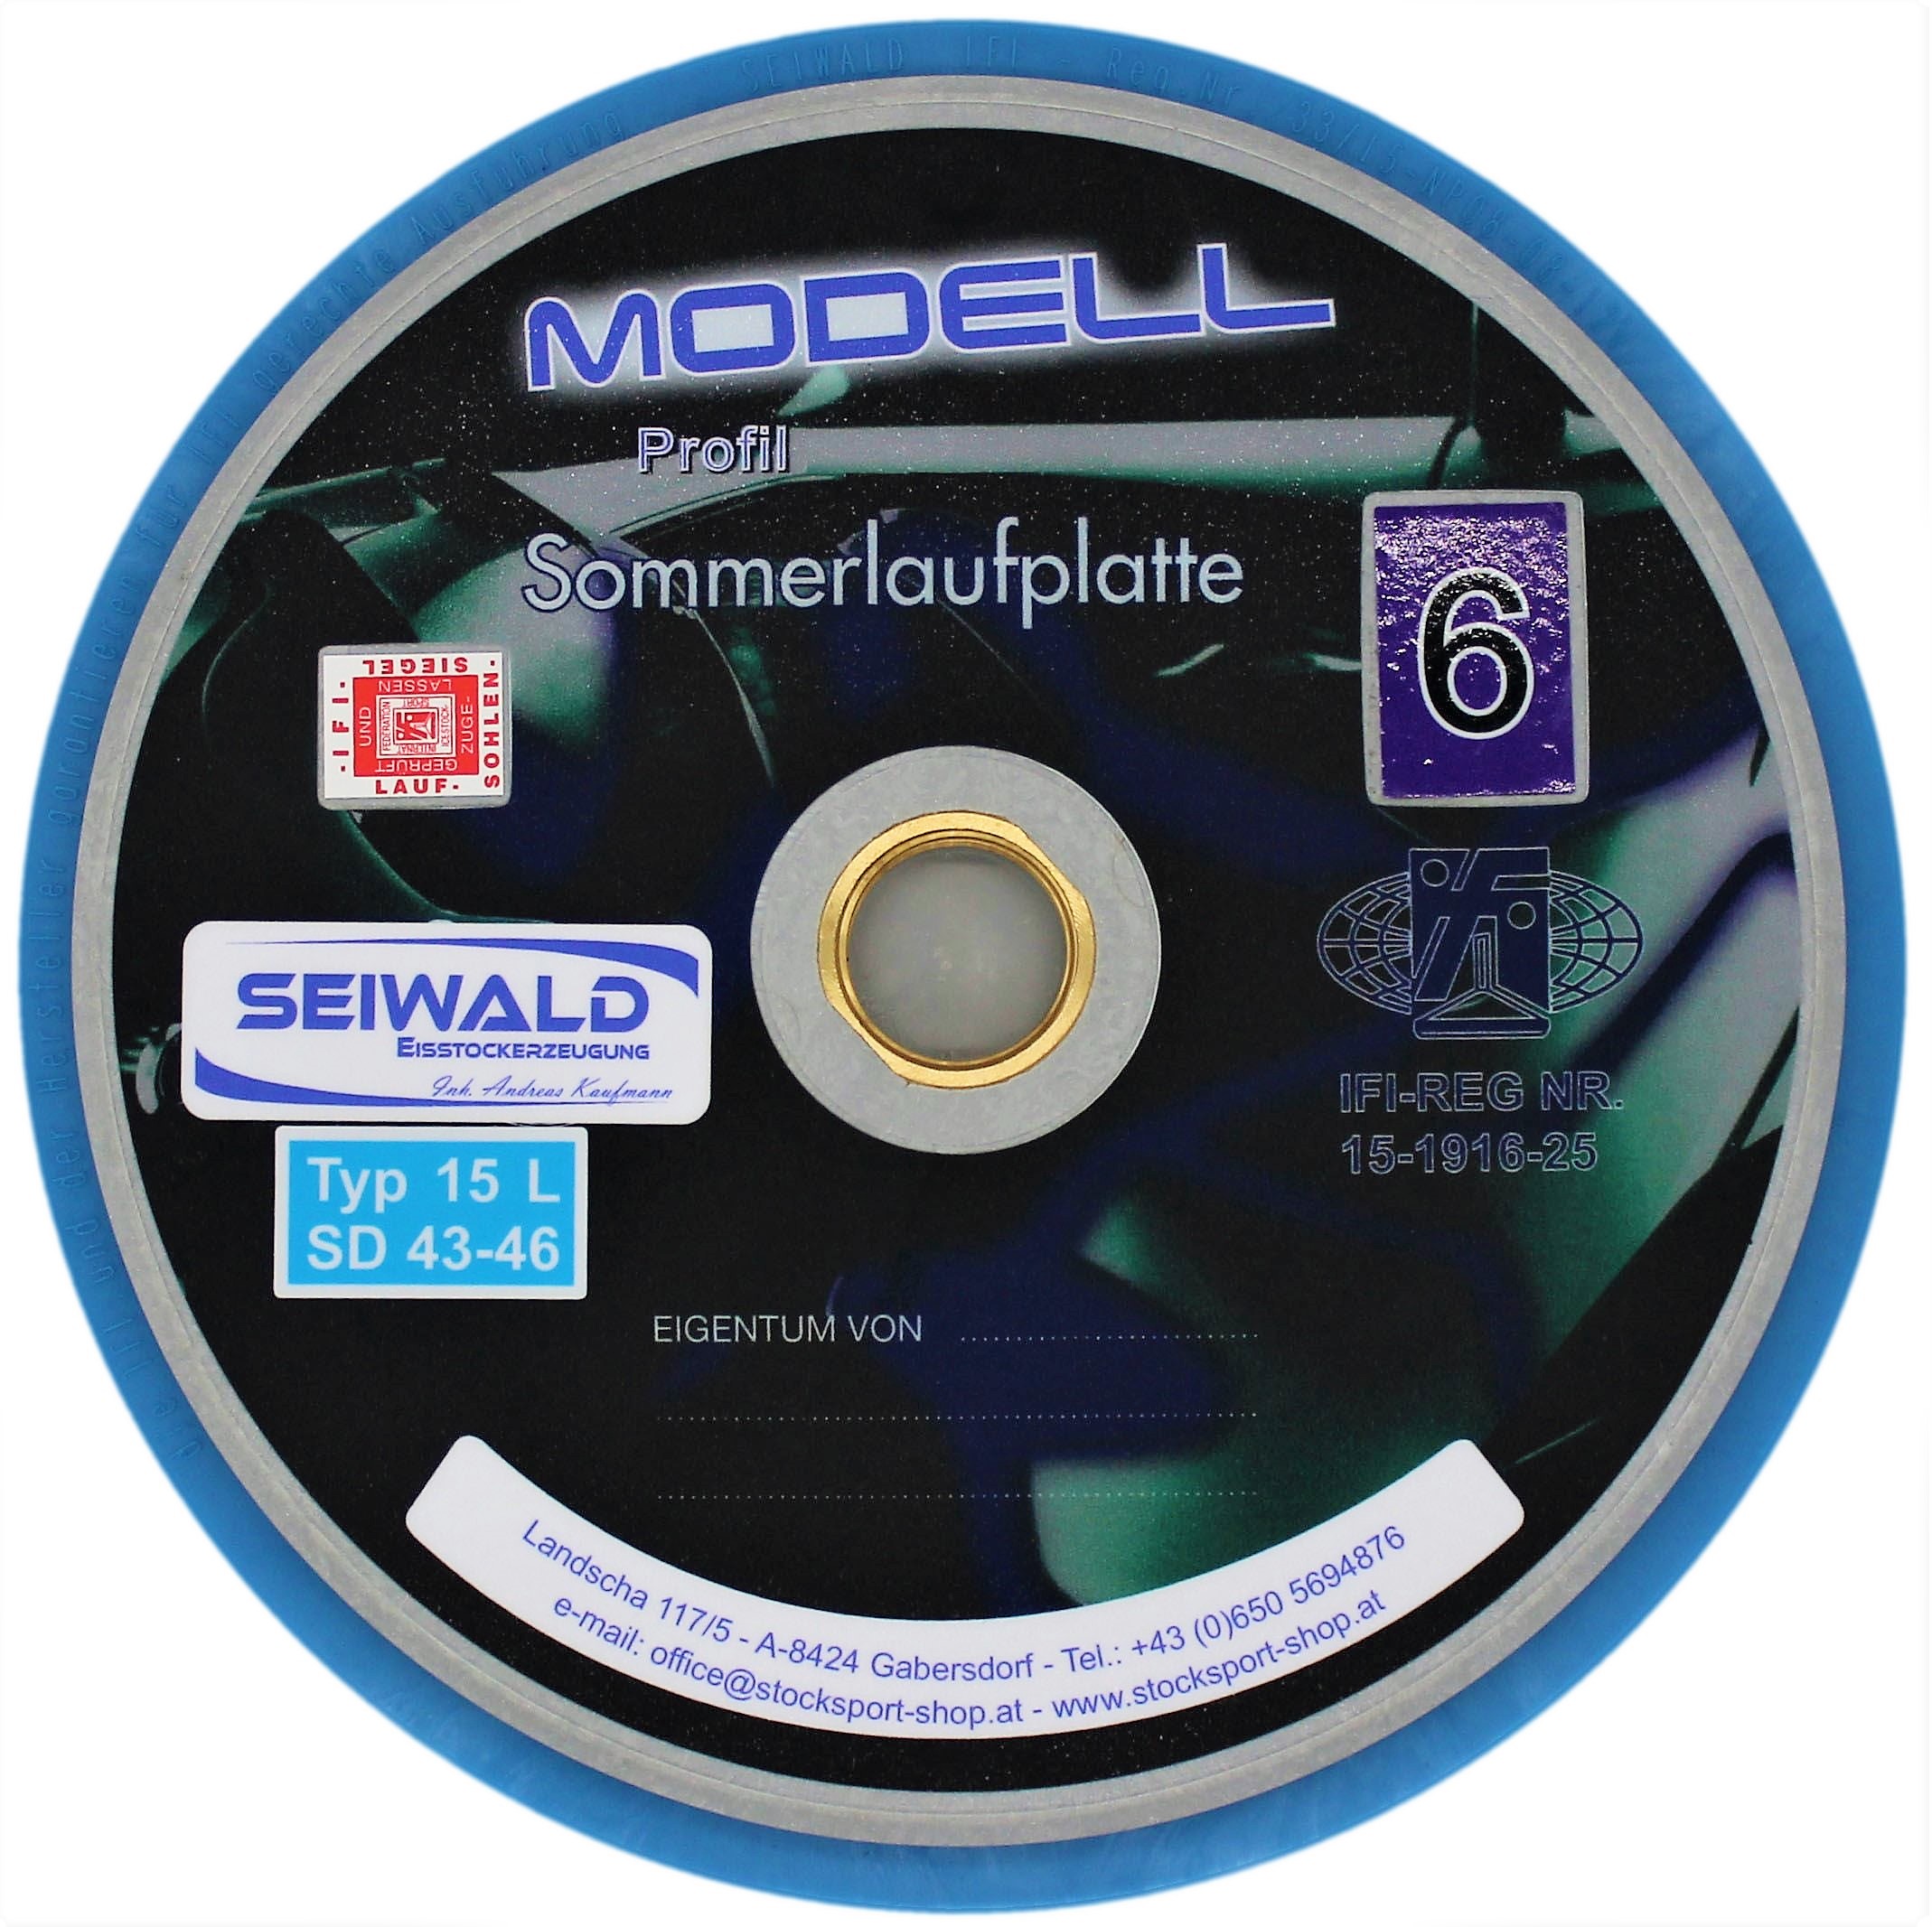 SEIWALD Modell 6 Profil / Mass und Stockplatte